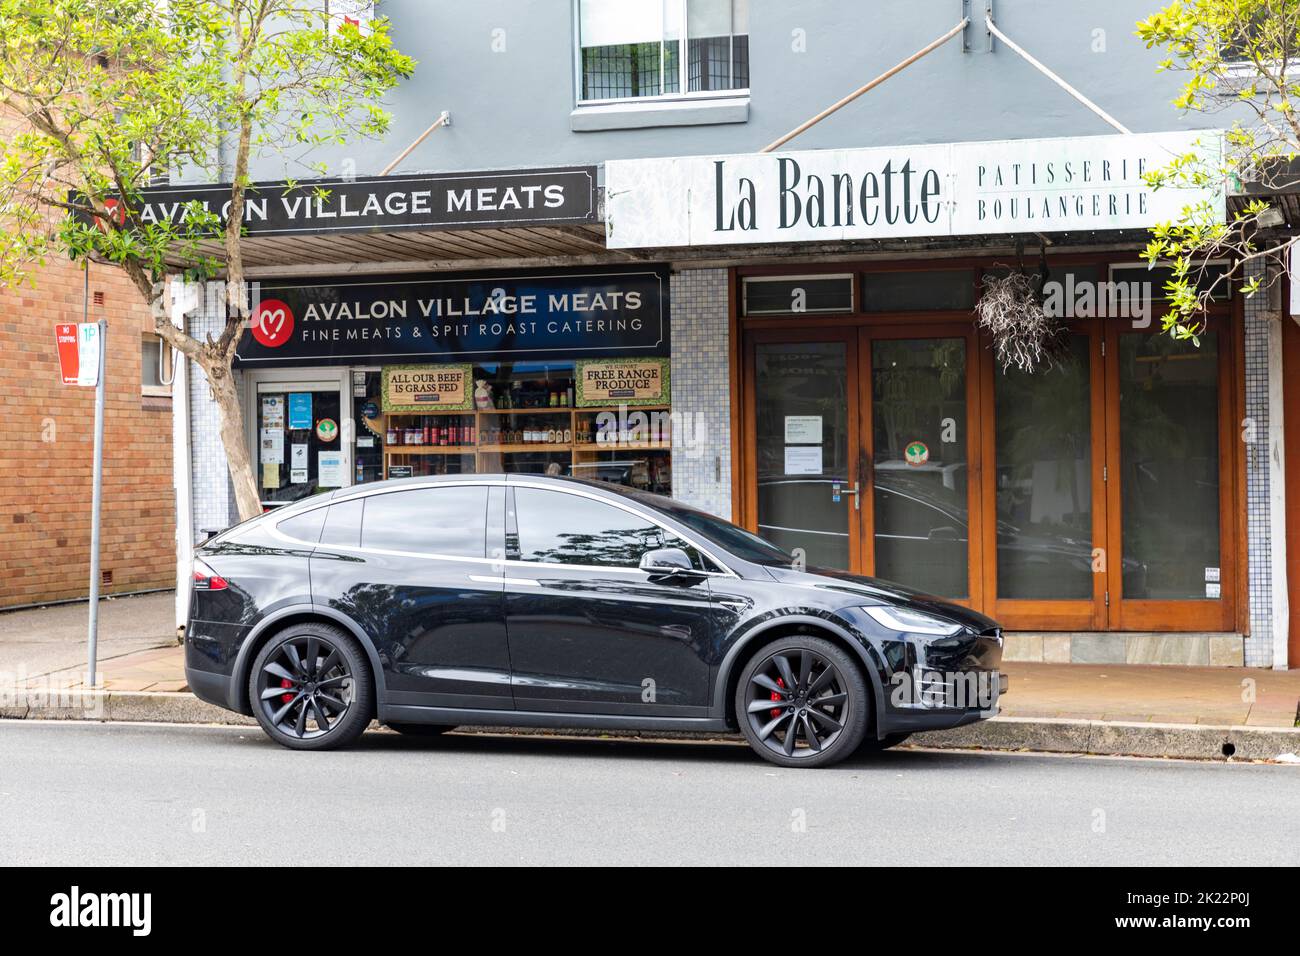 2020 veicolo elettrico Tesla Model X EV parcheggiato all'esterno di macellaio e pasticcerie a Avalon Beach, Sydney, NSW, Australia Foto Stock